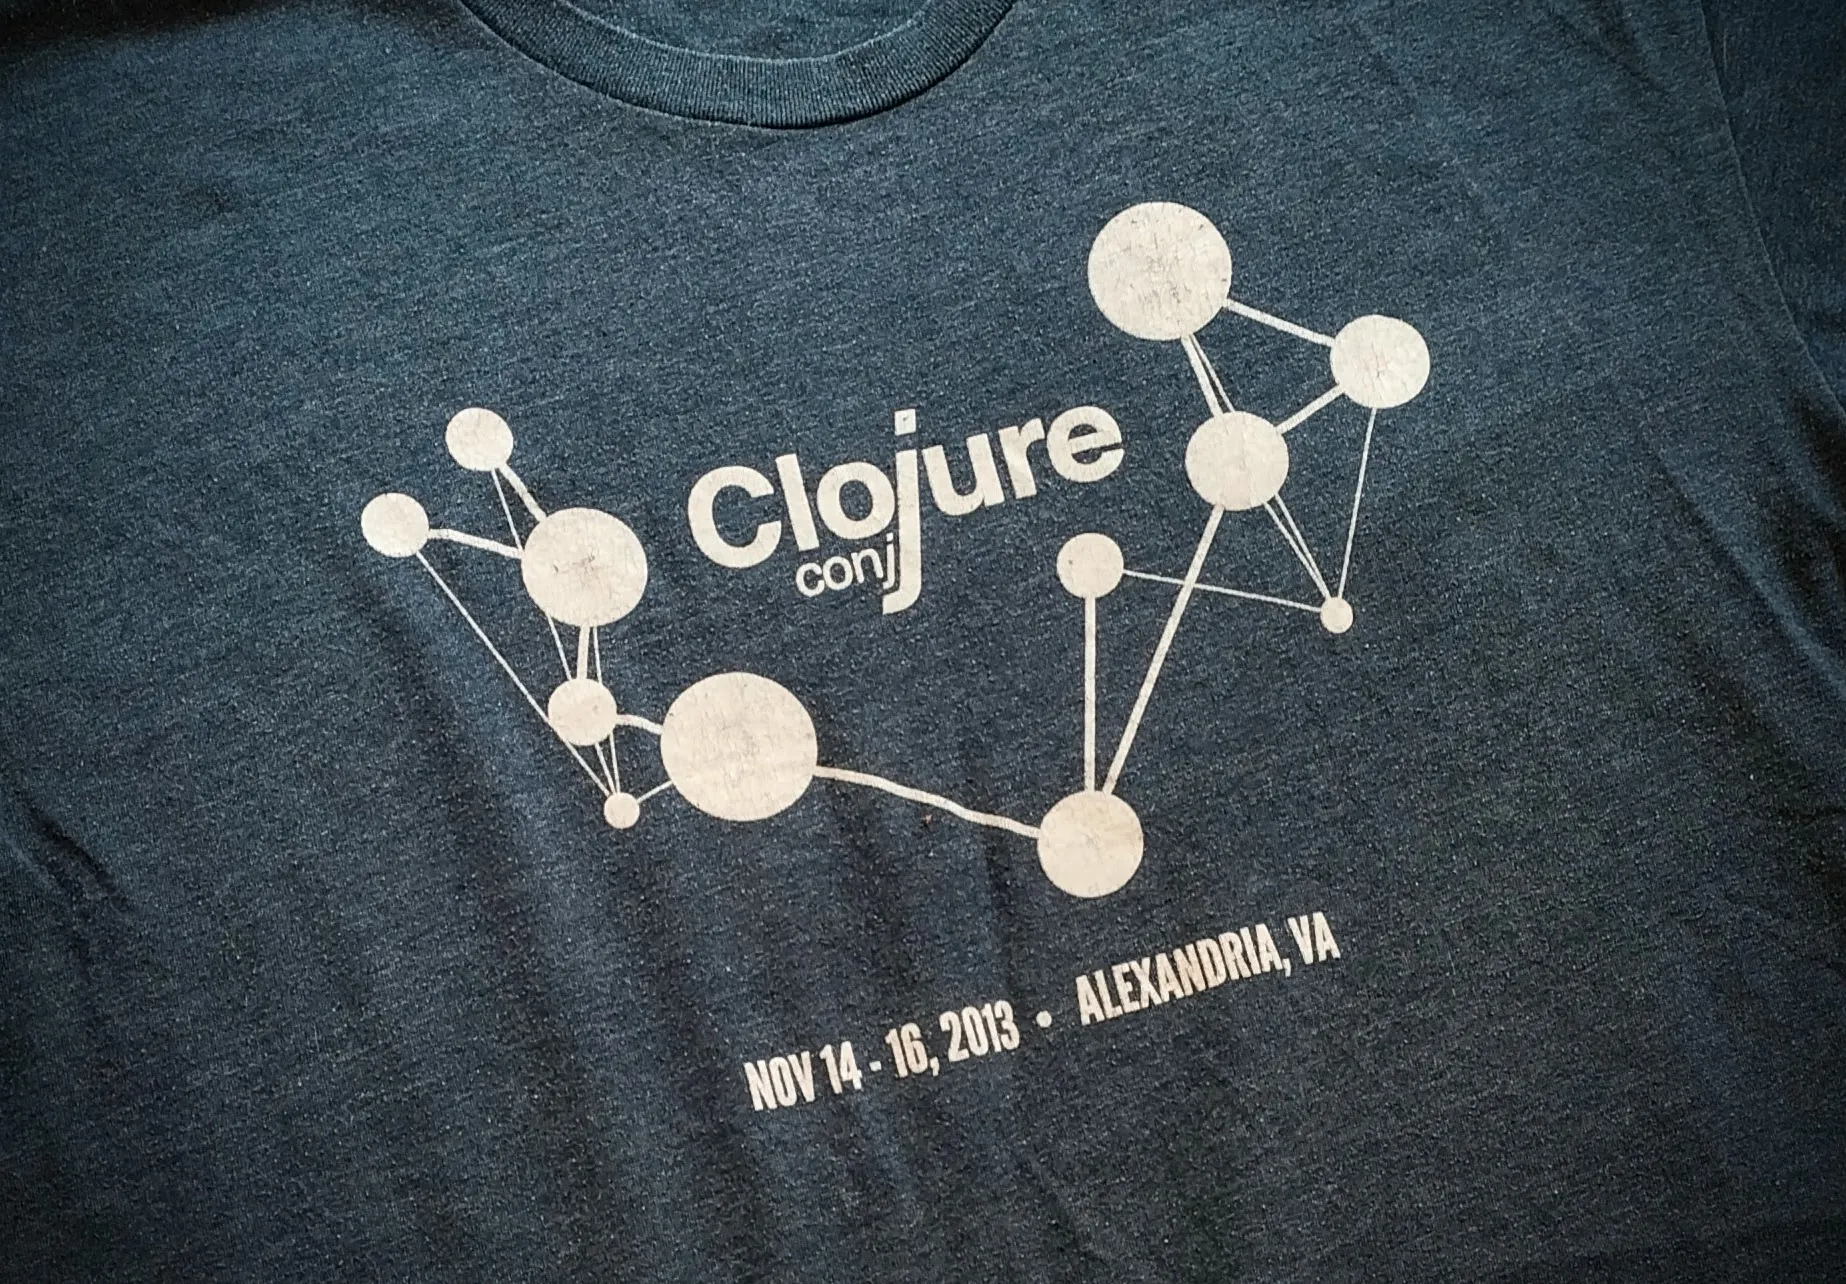 Clojure/conj 2013 T-shirt